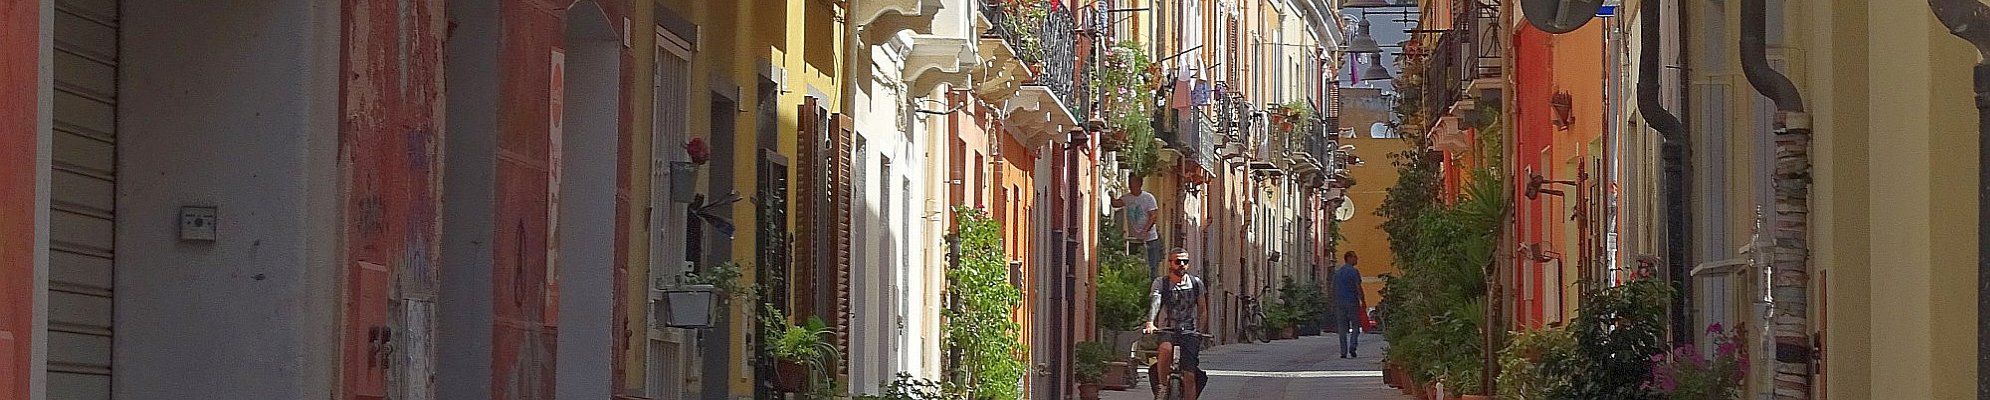 Sardinien - Altstadt von Olbia © Pixabay